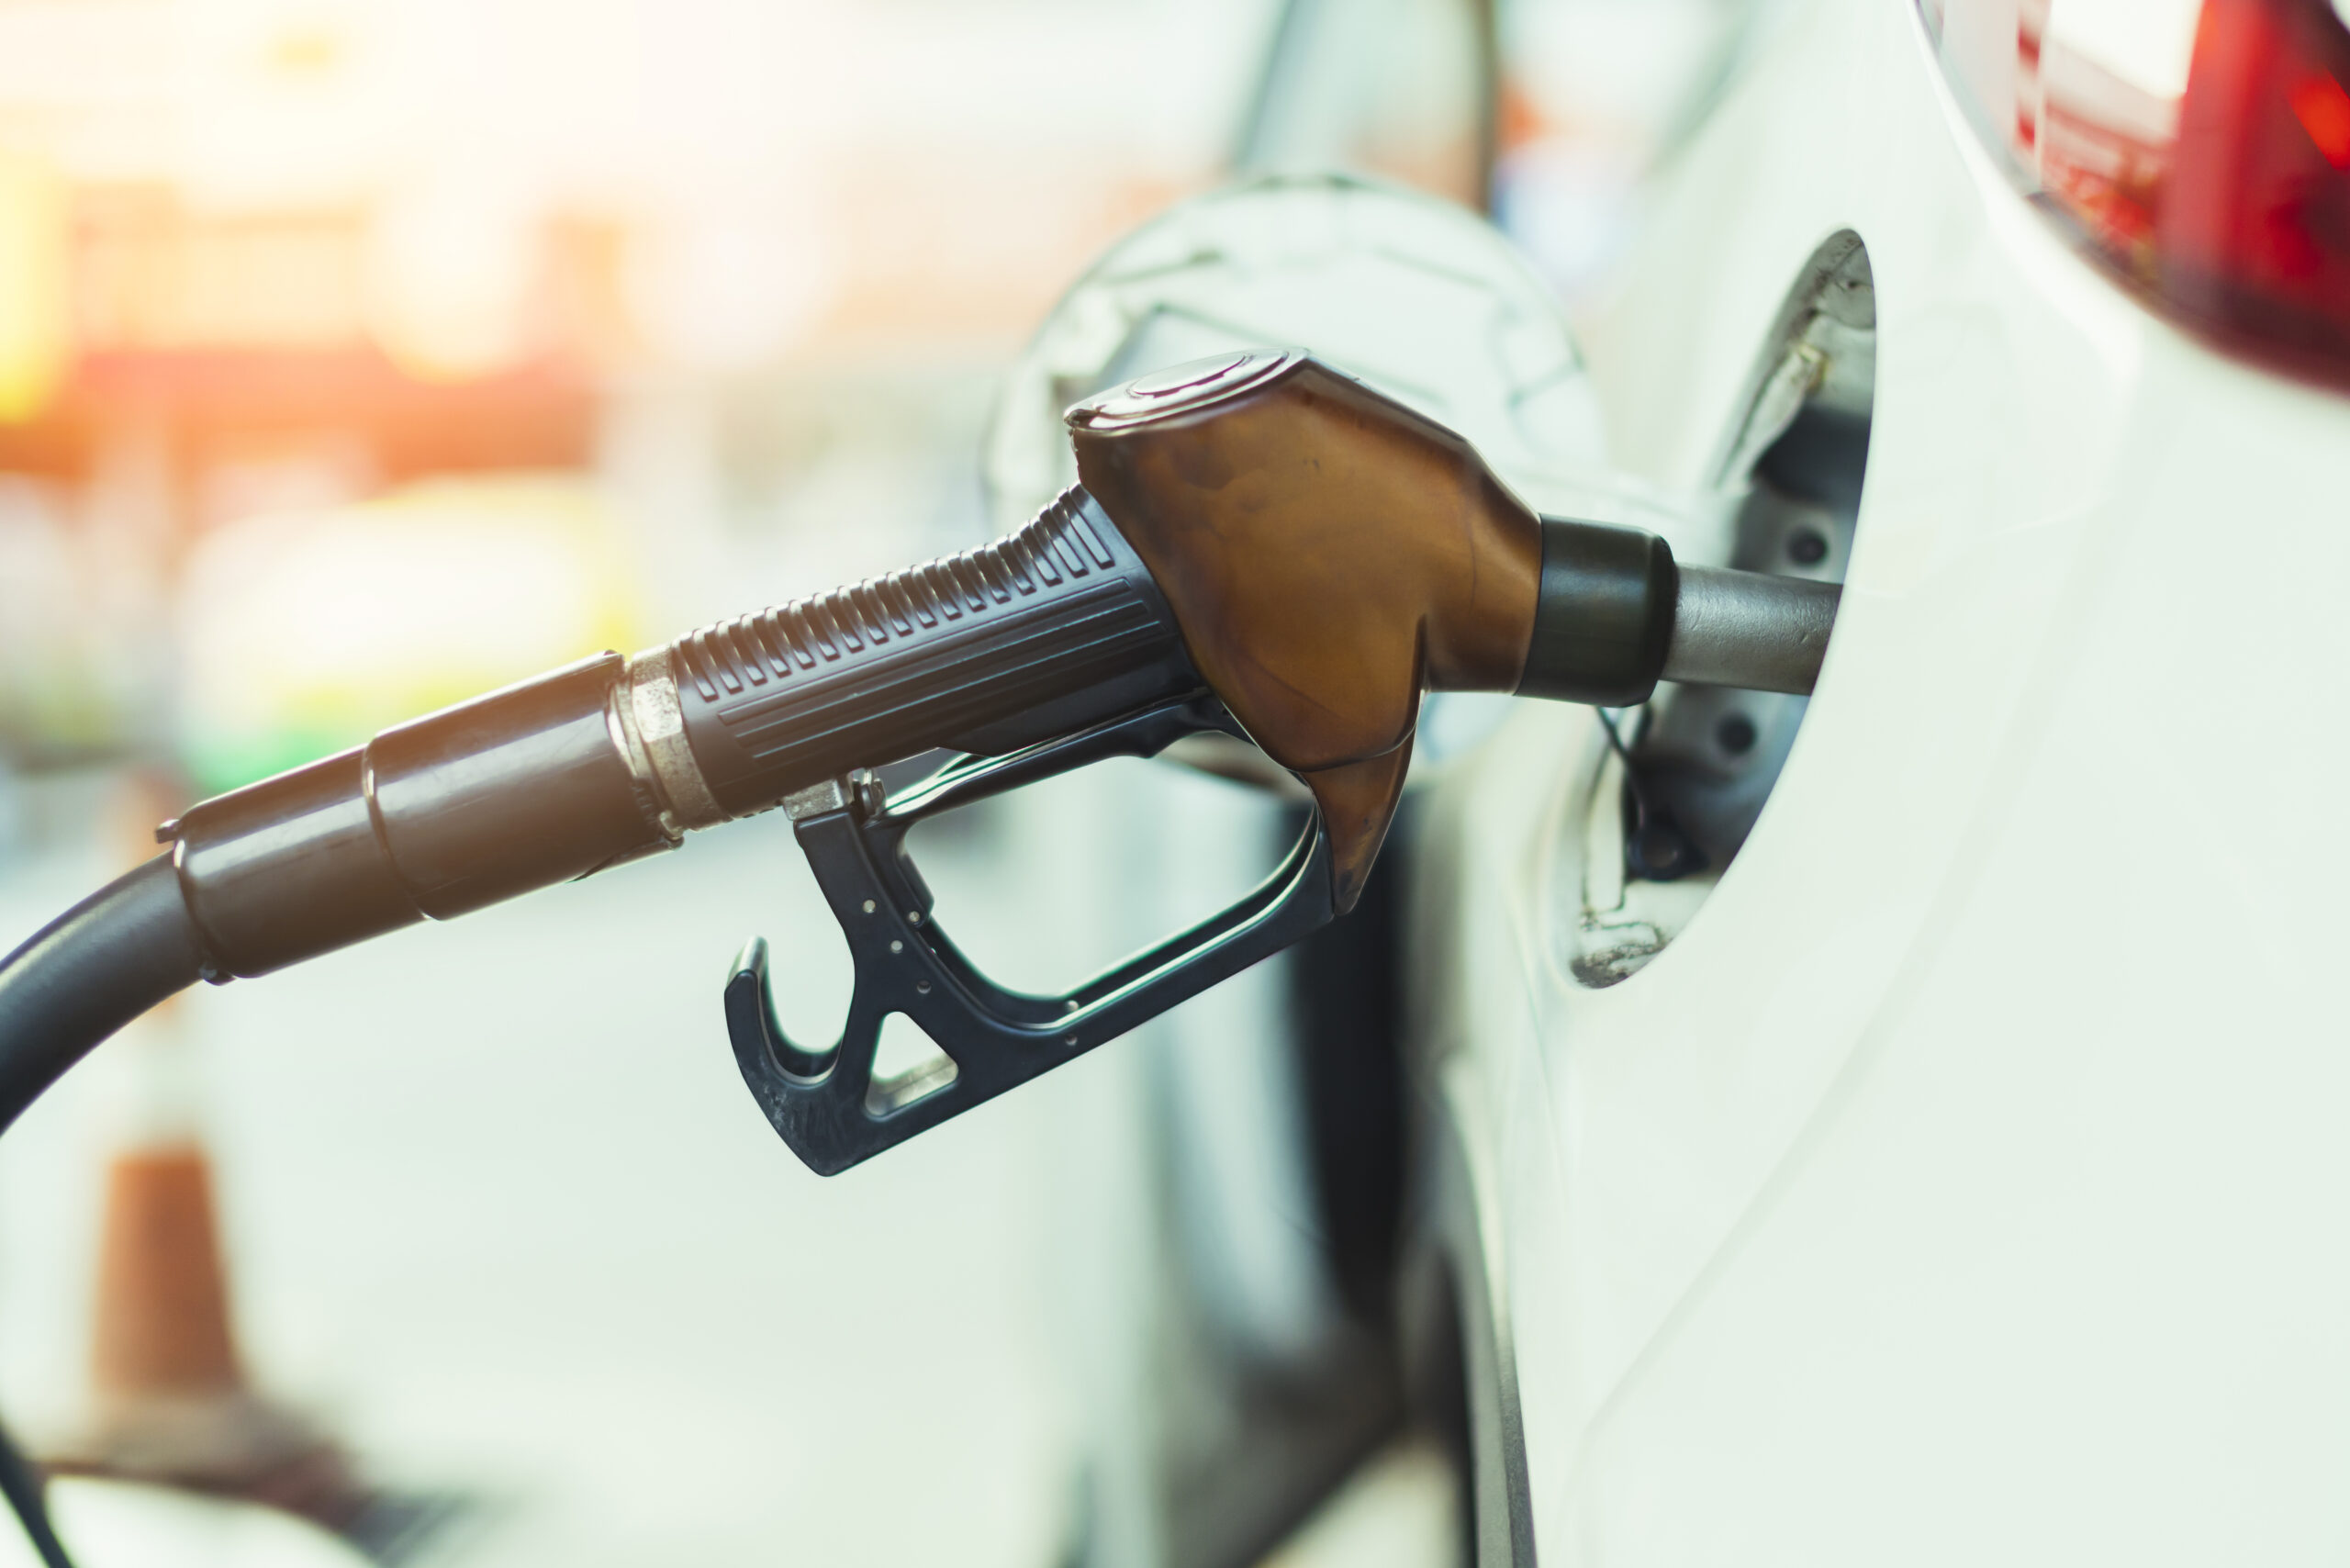 Ventajas de controlar el consumo de gasolina más allá de ahorrar